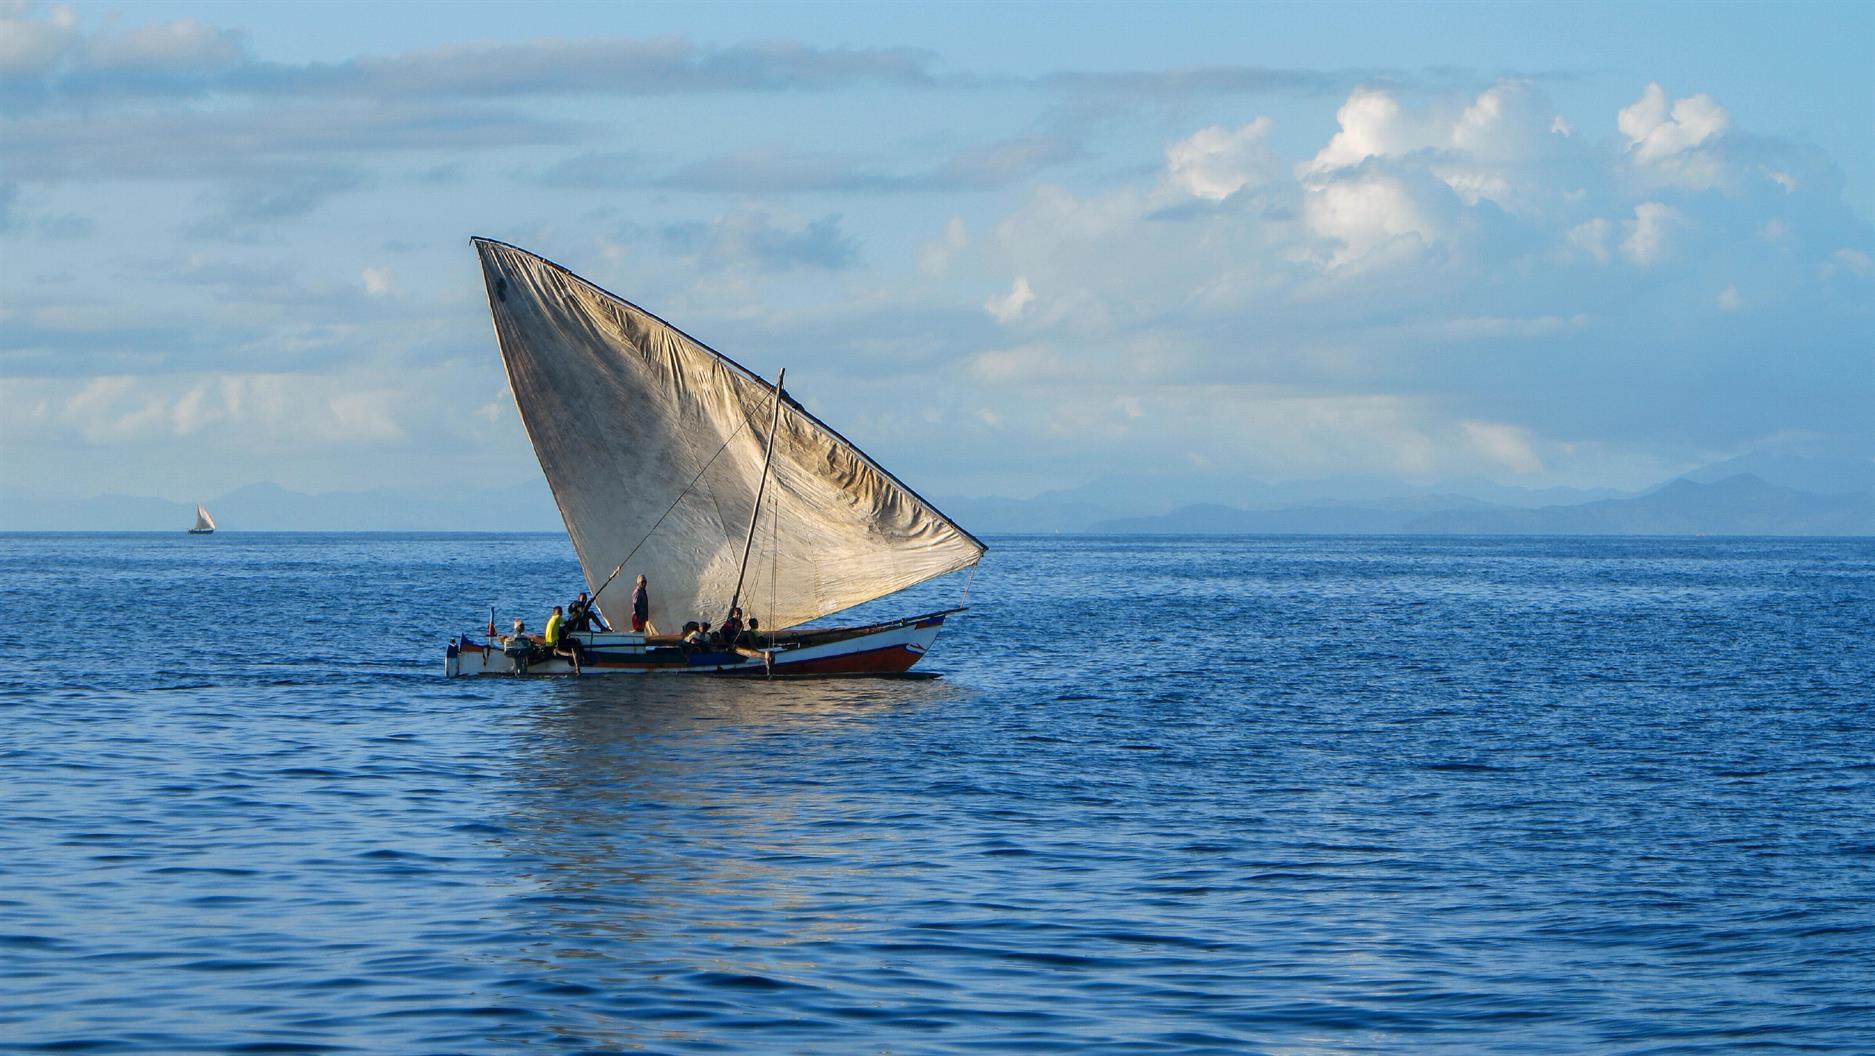 Überall sehen wir diese wunderschönen Segelboote, die hier hauptsächlich für den Transport von Gütern genutzt werden. Sie sind die „Lastwagen“ von Madagaskar.